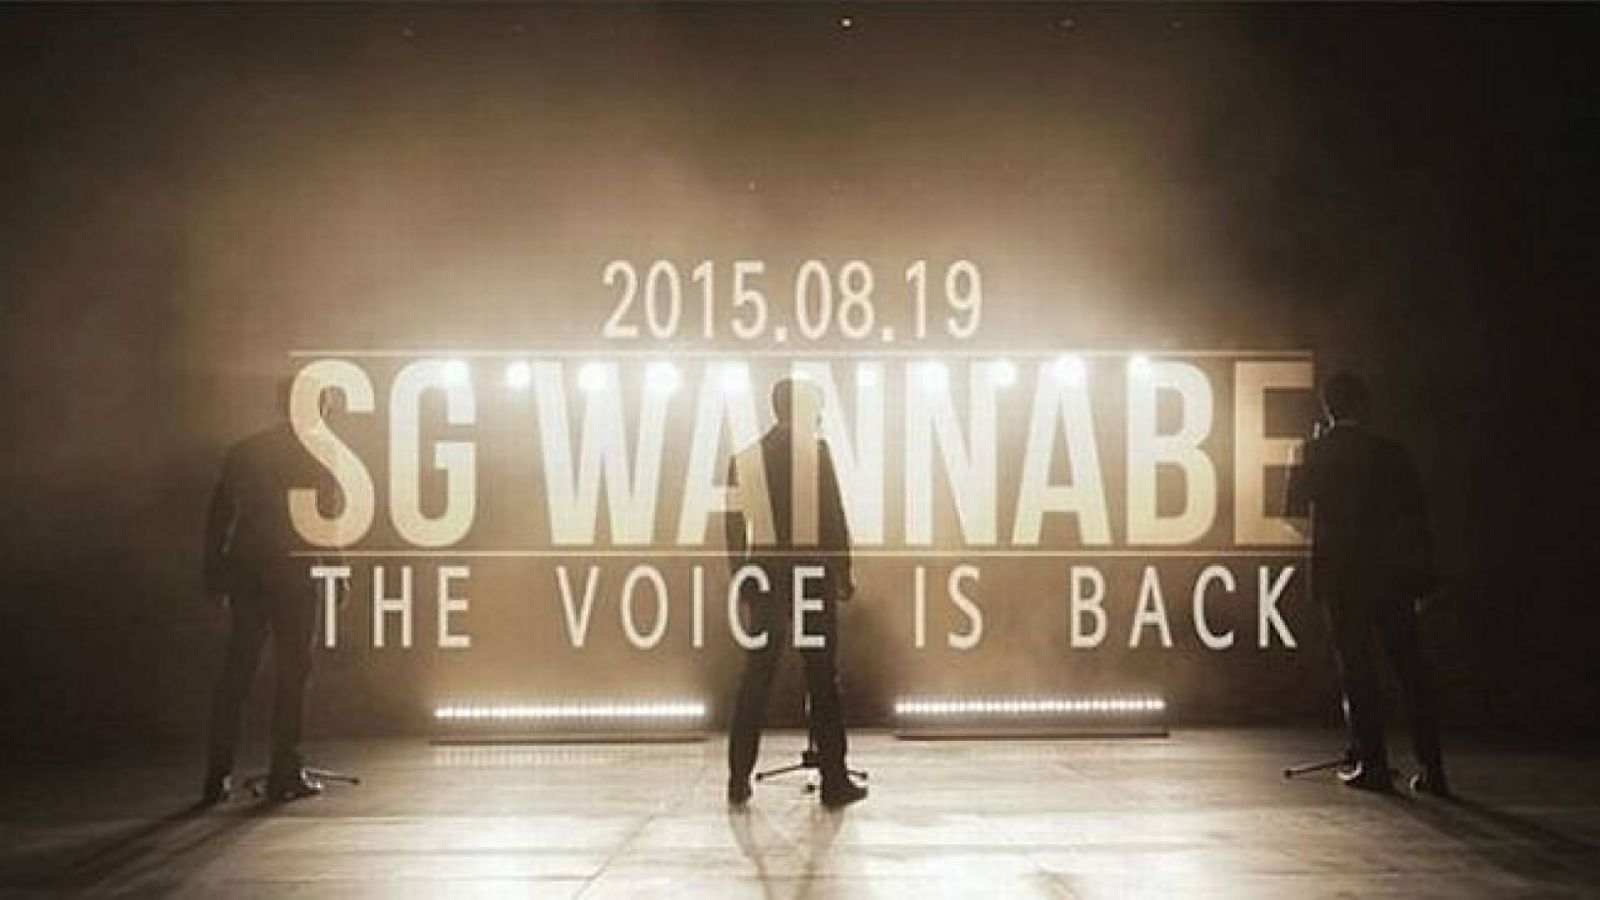 SG Wannabe kehren zurück © SG Wannabe Official Facebook Page